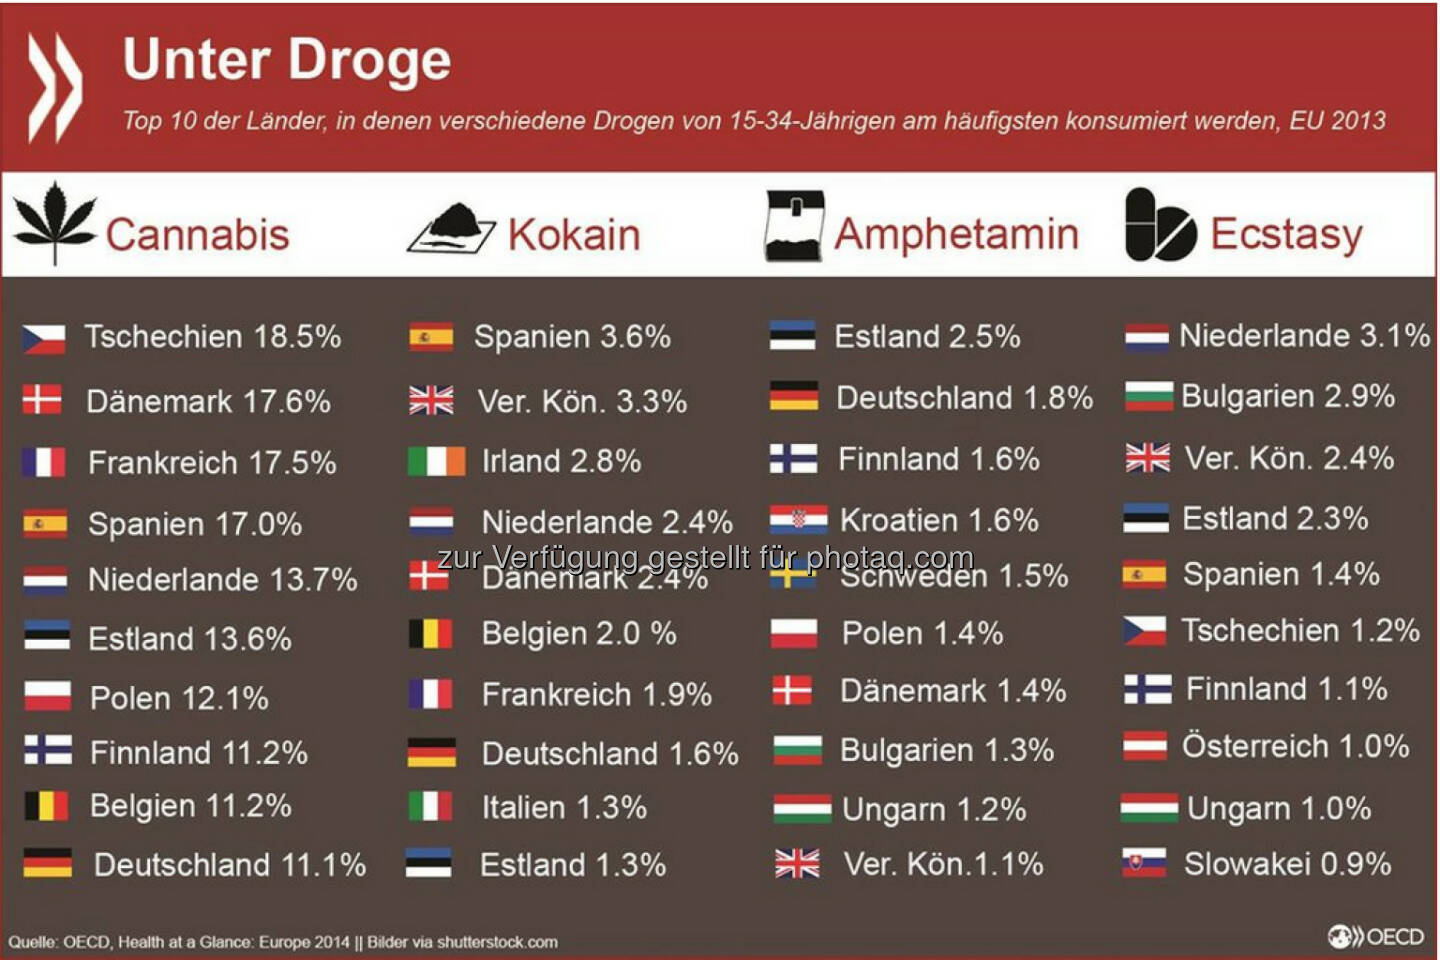 High and low: Der Konsum von Cannabis, Amphetamin und Kokain bei jungen Erwachsenen (15-34) ist in Deutschland verbreiteter als in Österreich. In der EU wird in Tschechien am meisten gekifft und in Spanien am meisten gekokst. Amphetamin ist in Estland am gebräuchlichsten, Ecstasy in den Niederlanden.
Mehr Informationen unter: http://bit.ly/1sFRZ4N